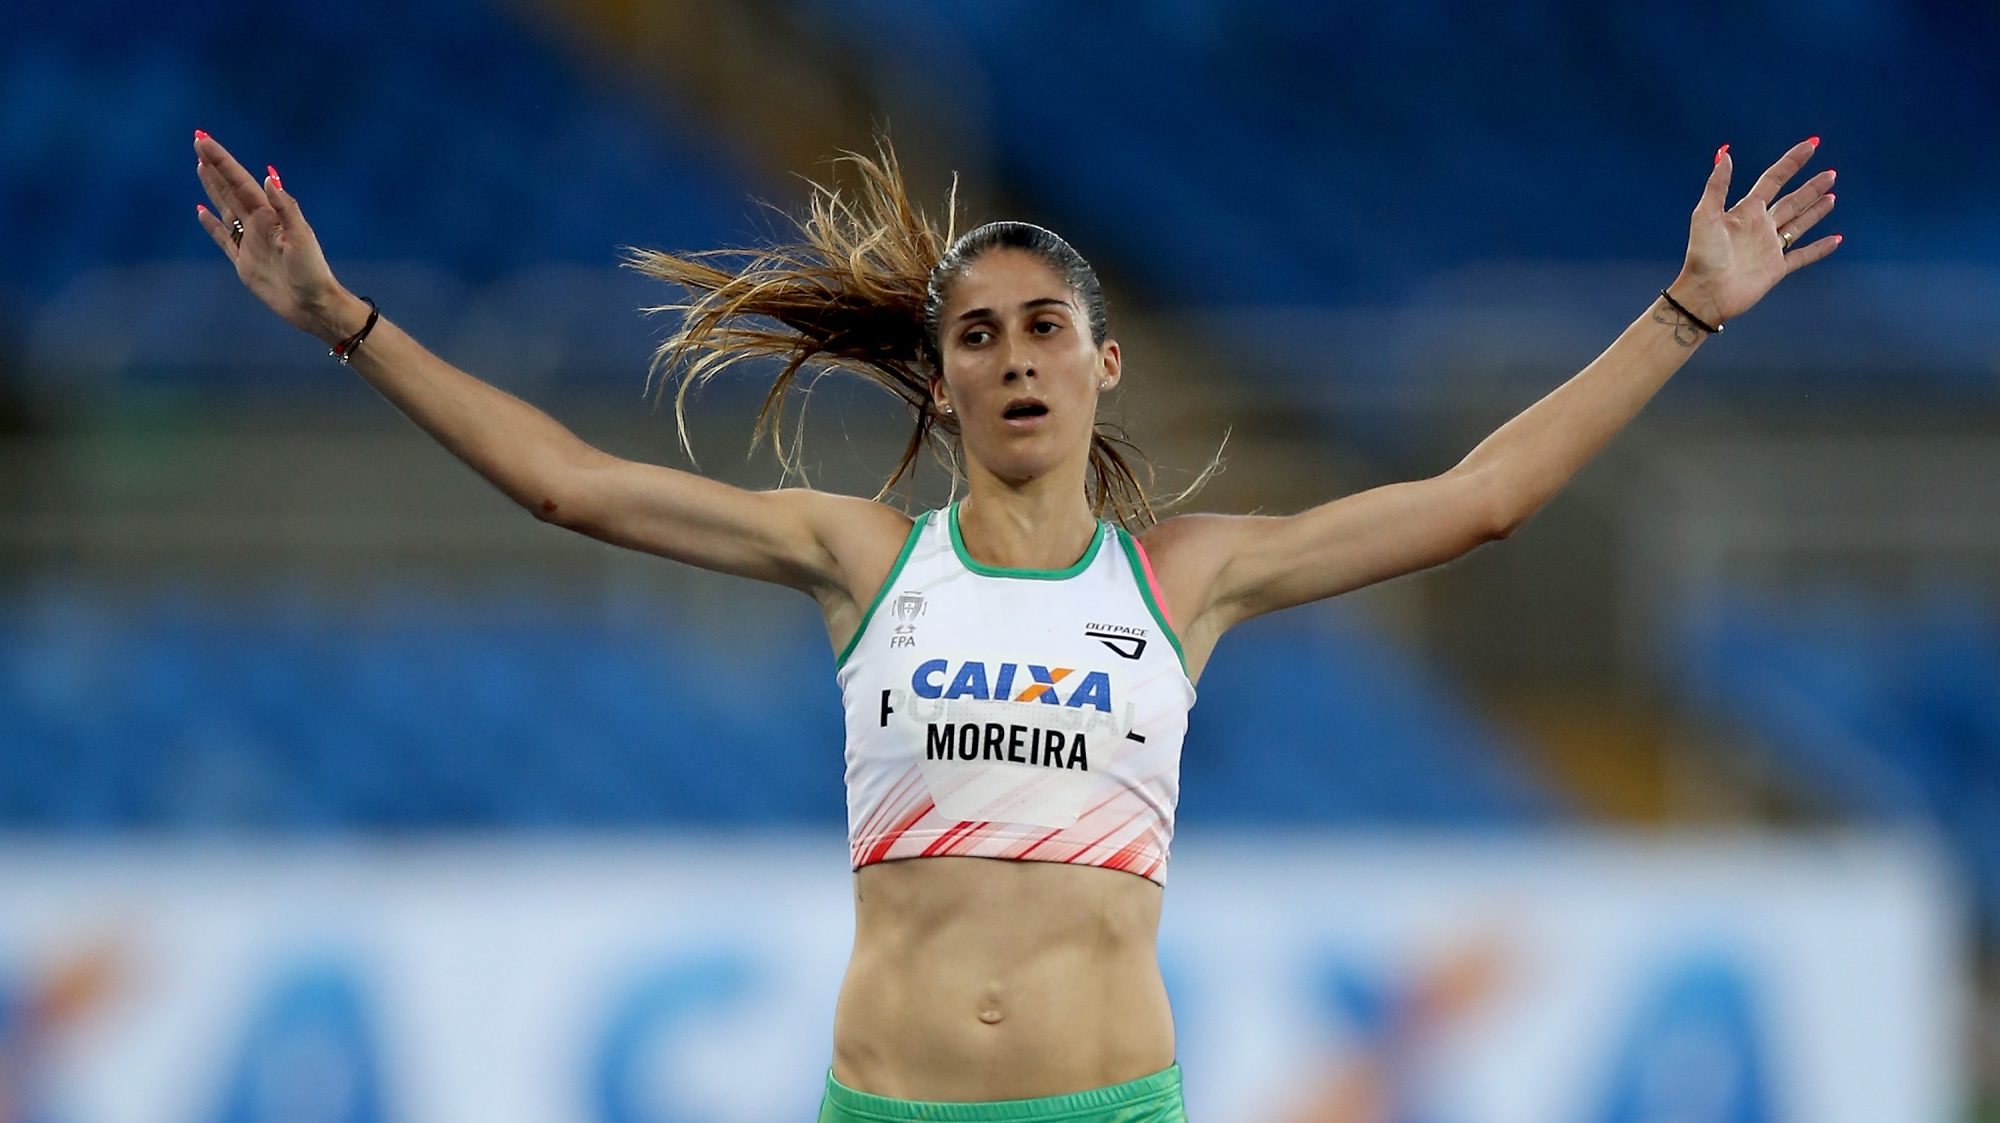 Sara Moreira vai fazer a sua terceira participação nos Jogos Olímpicos, depois da ausência em 2016 por lesão